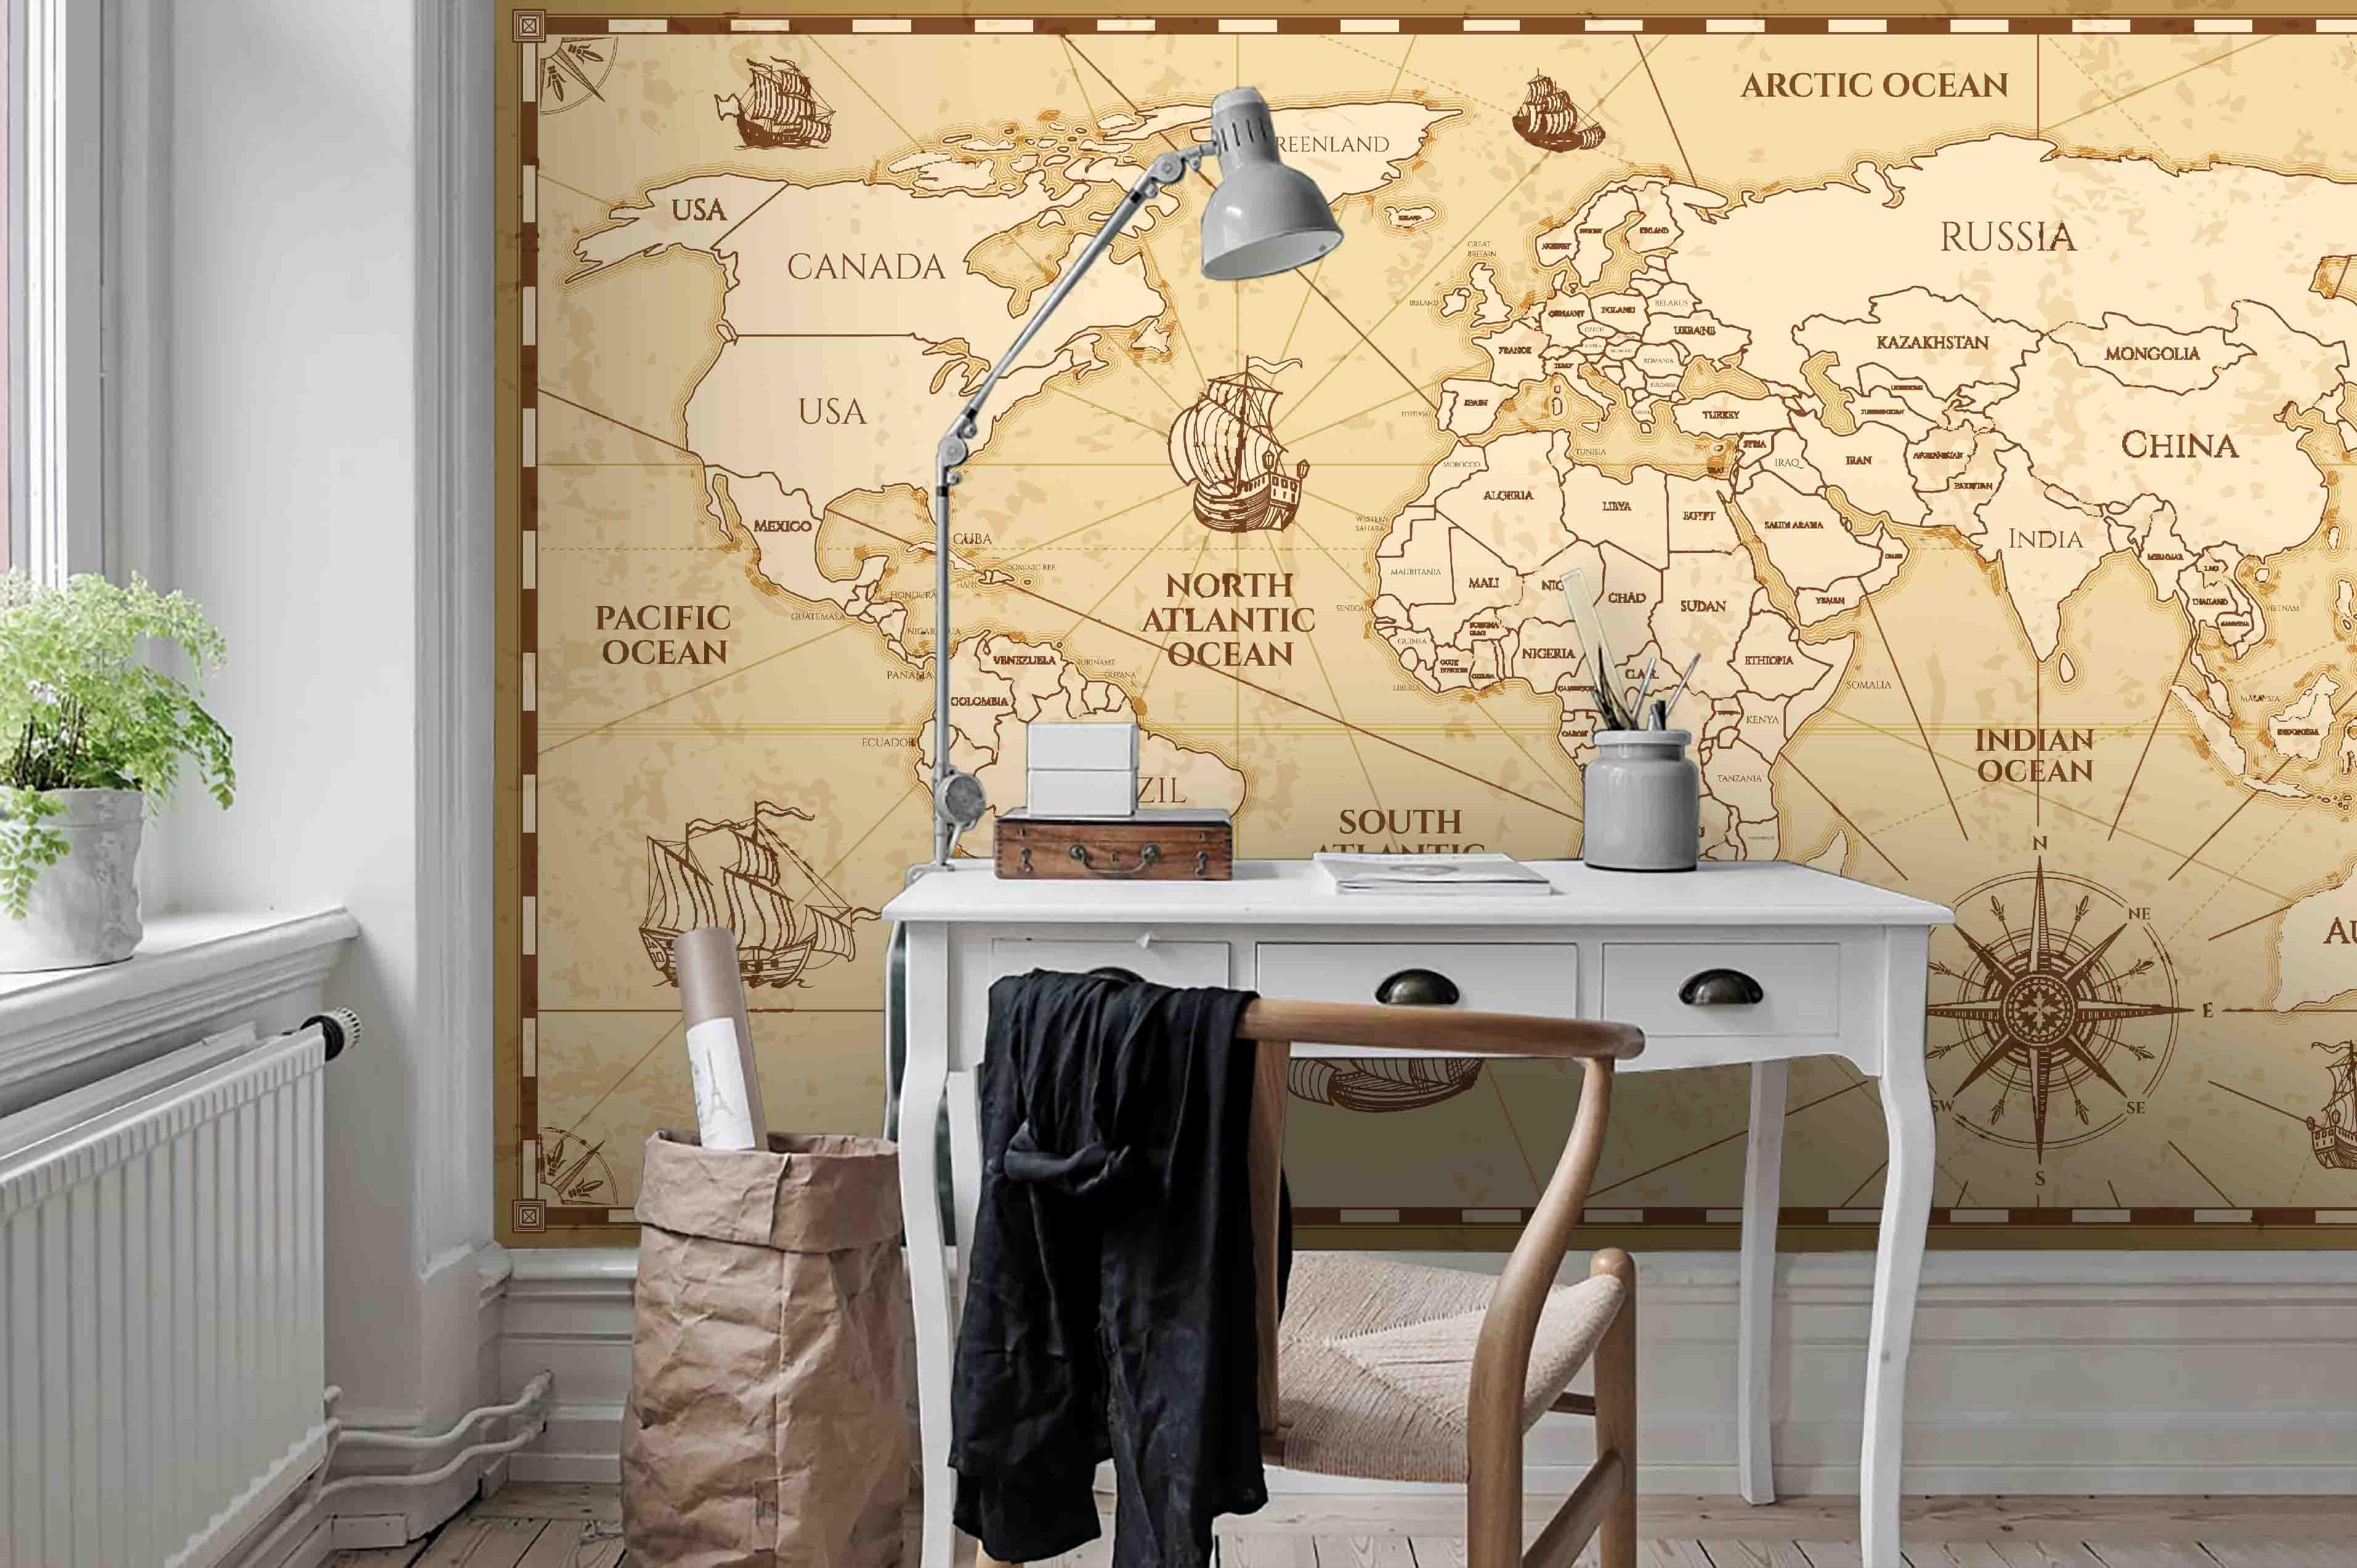 3D Vintage World Map Wall Ship Mural Wallpaper 26- Jess Art Decoration